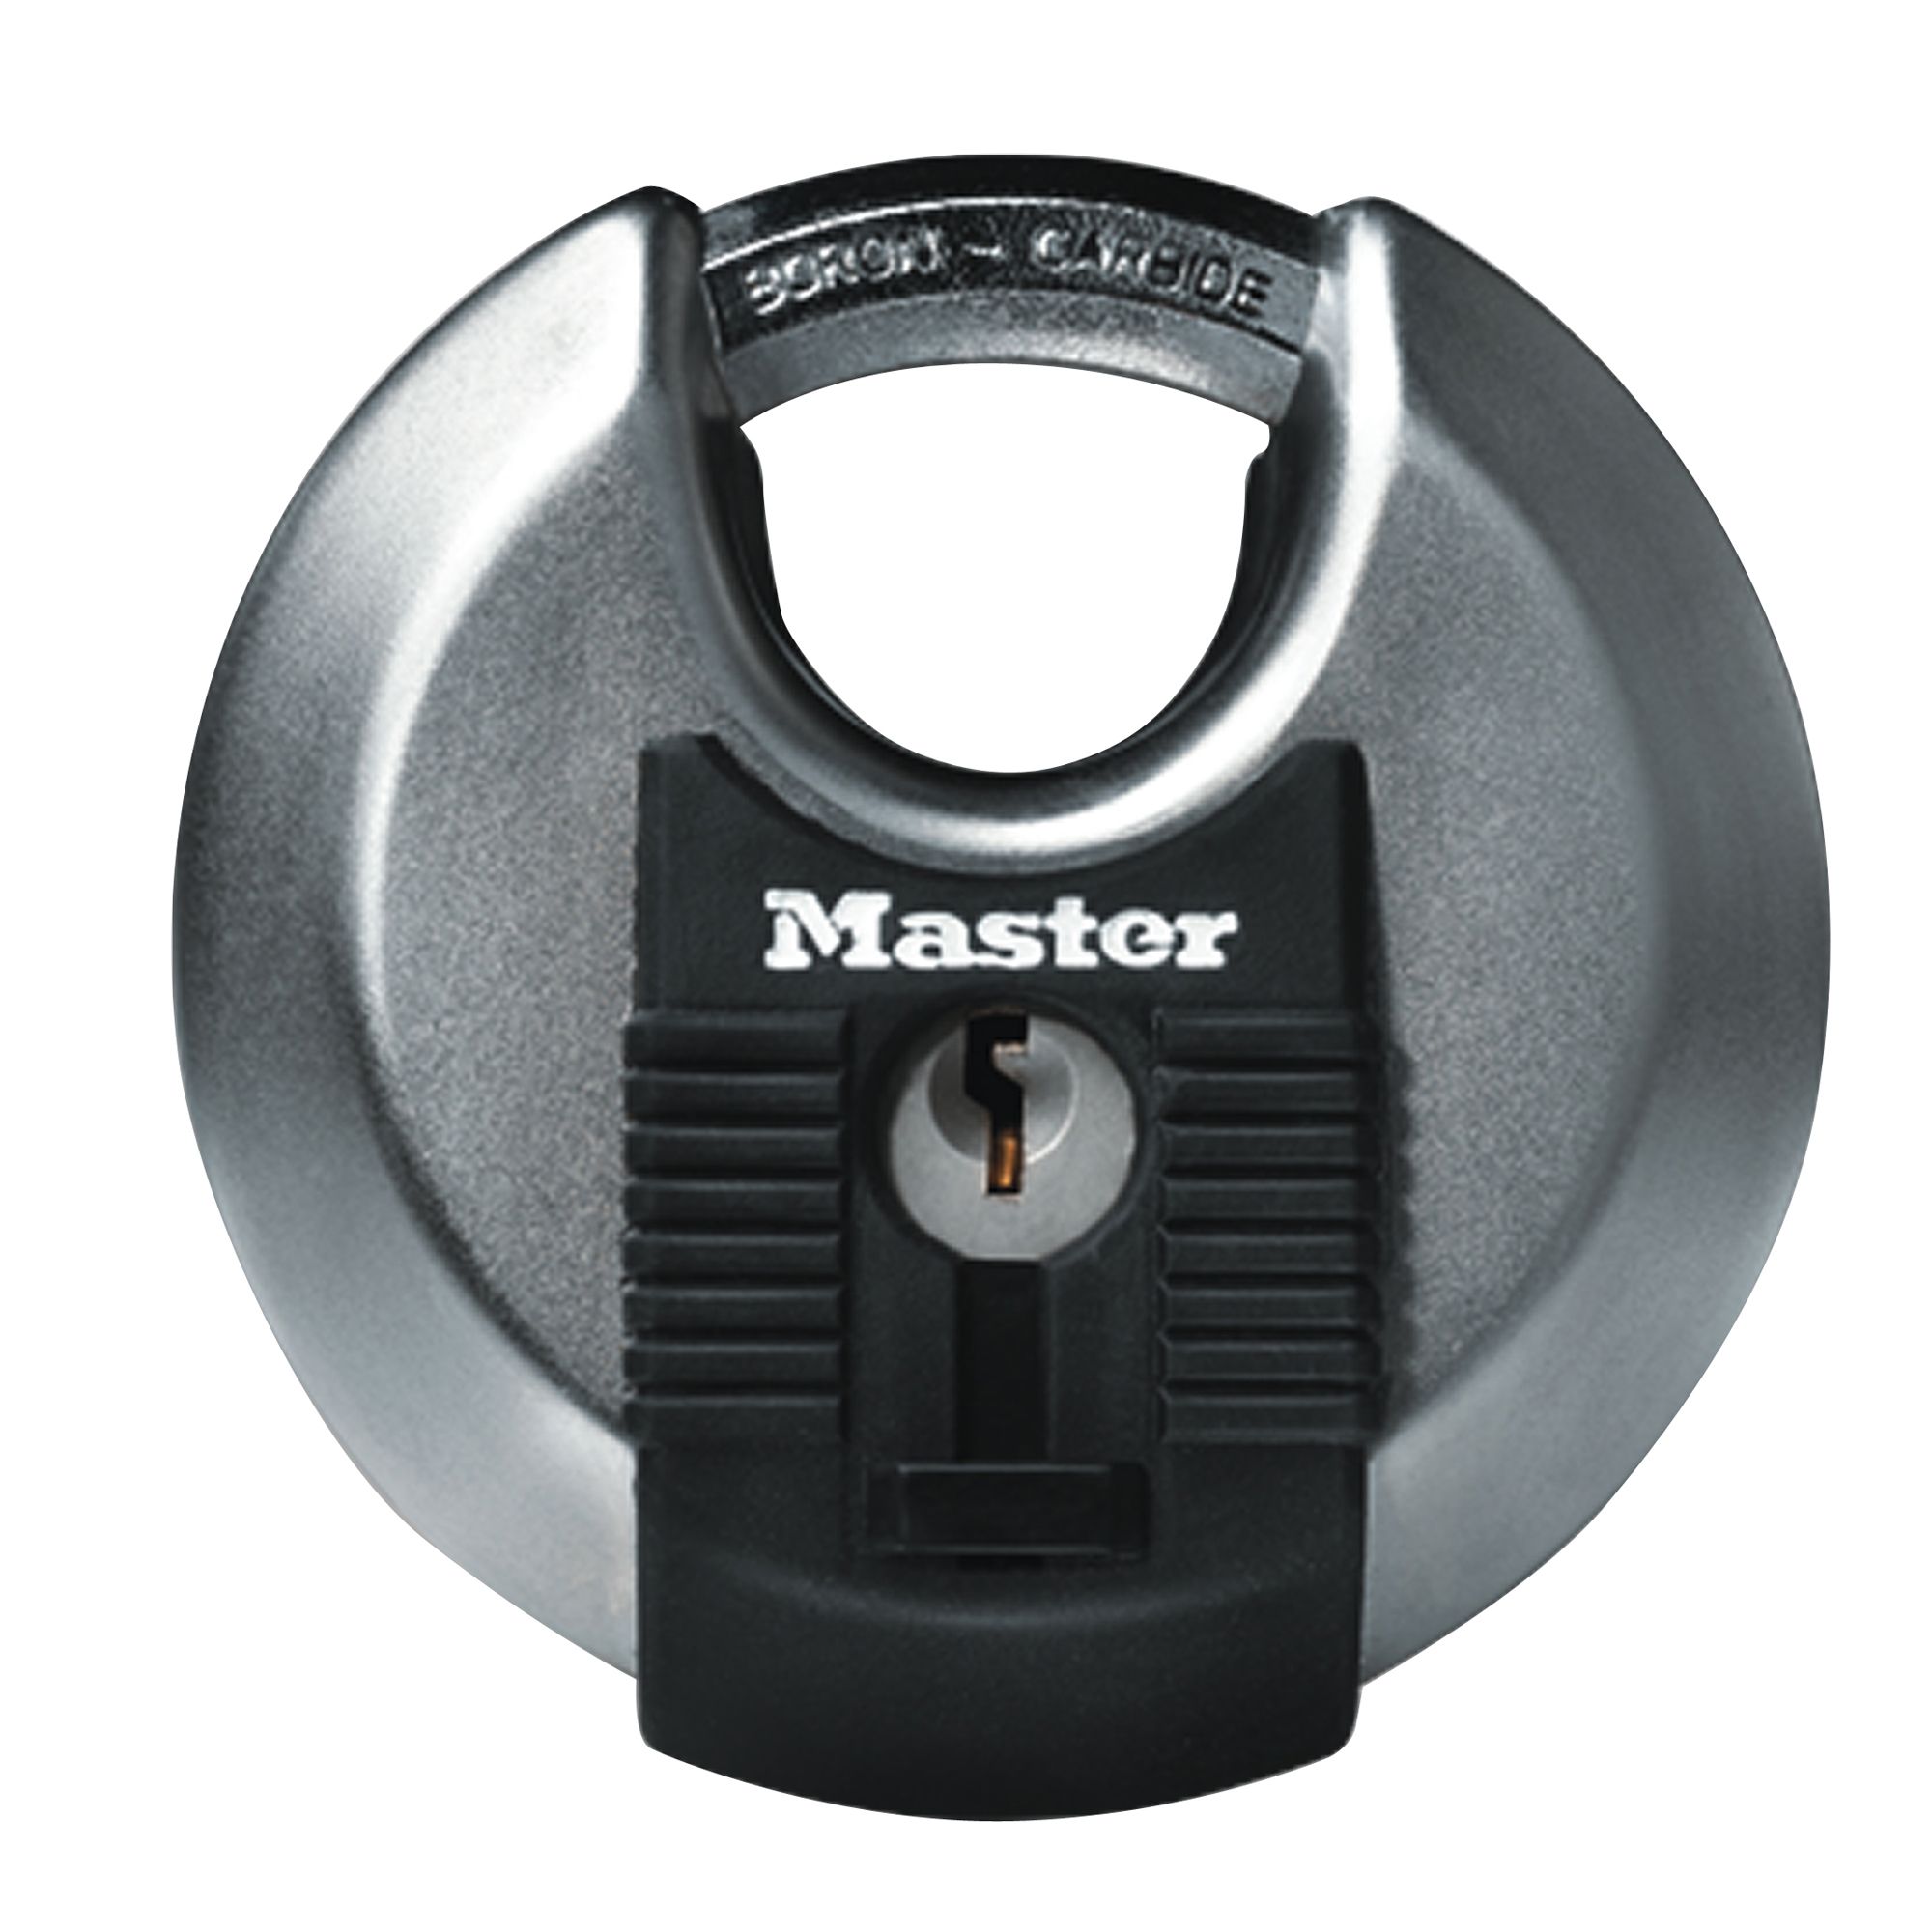 master padlocks uk